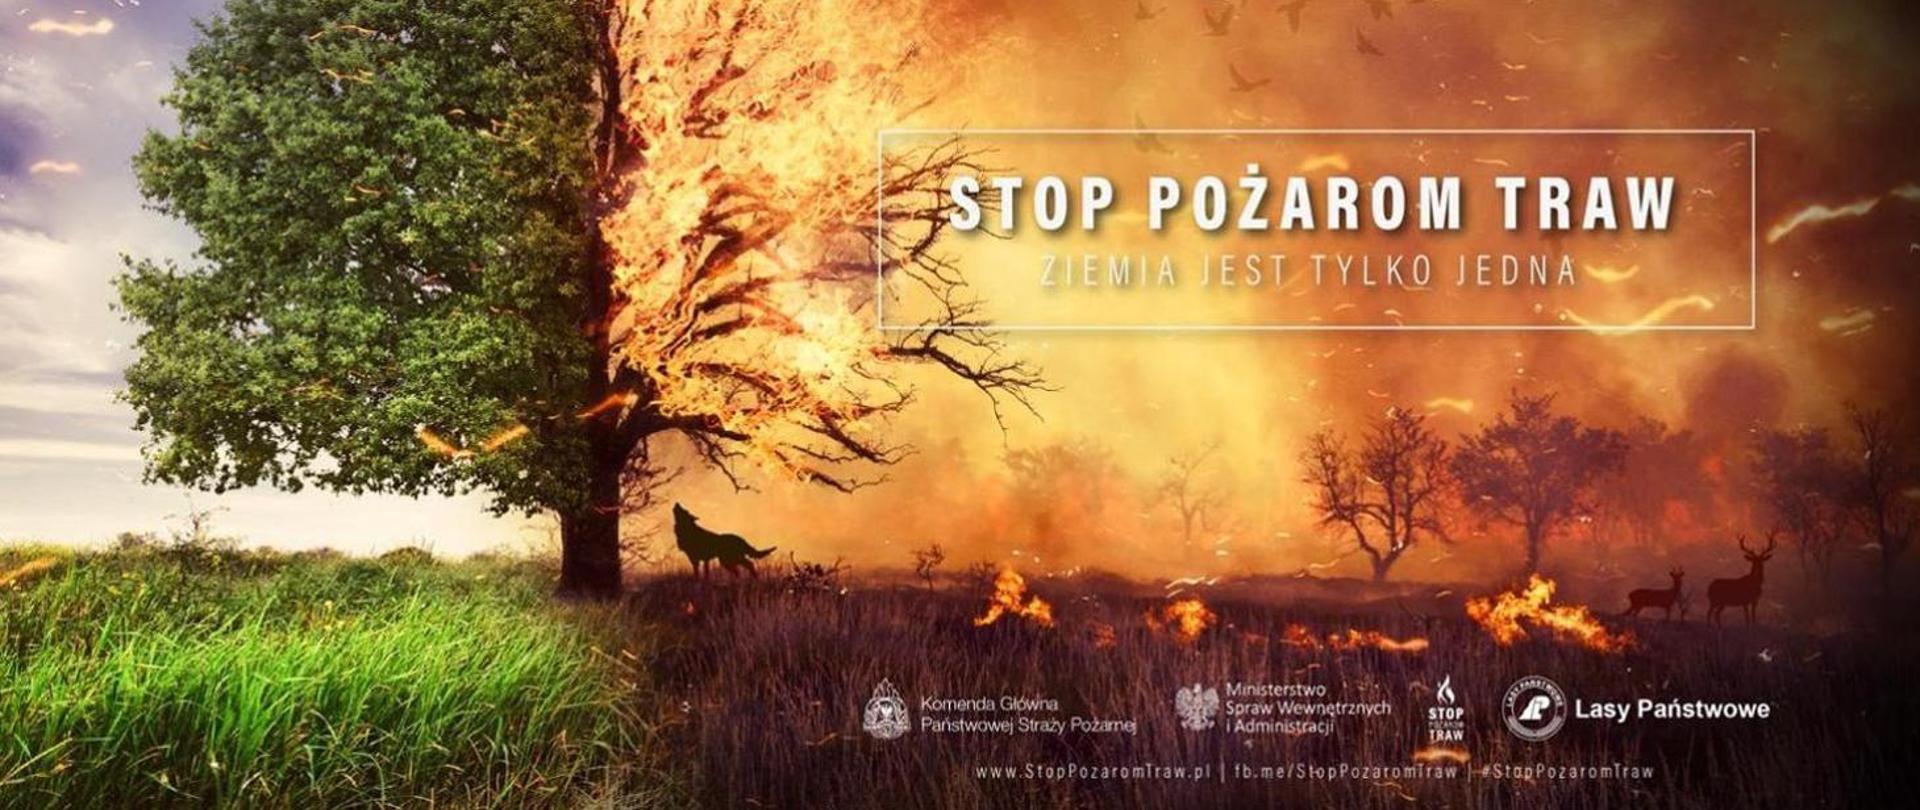 Zdjęcie przedstawia grafikę promującą akcję "Stop pożarom traw". 